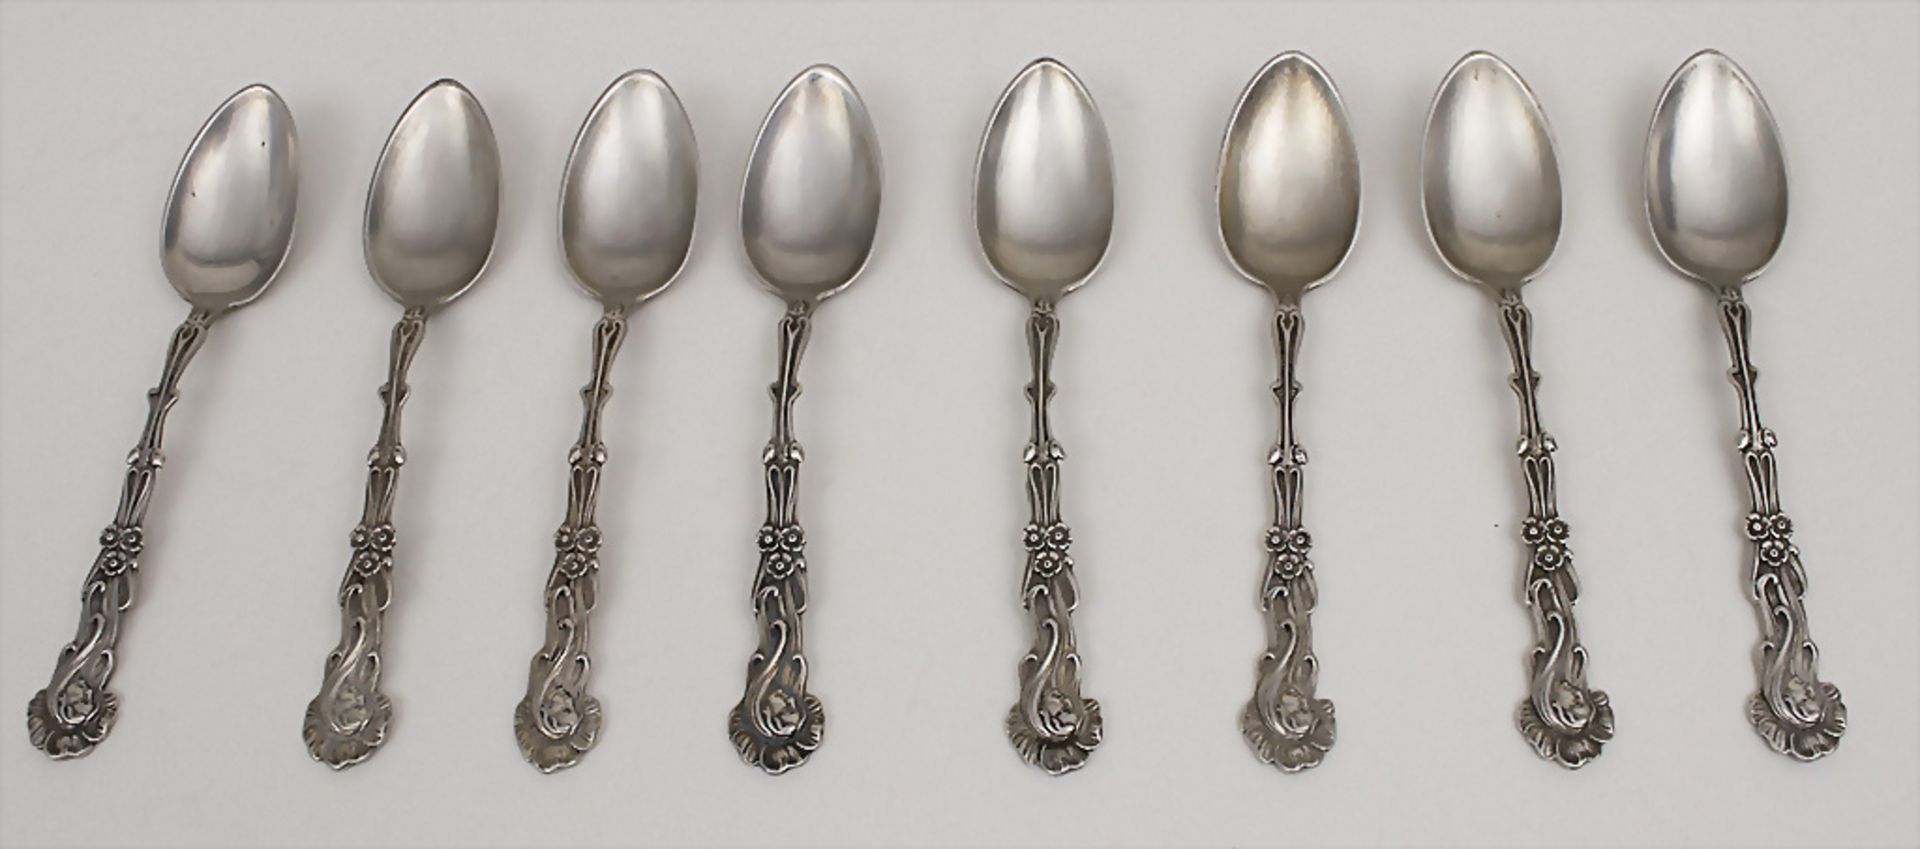 8 Jugendstil Kaffeelöffel / 8 Art Nouveau coffee spoons, deutsch, um 1900